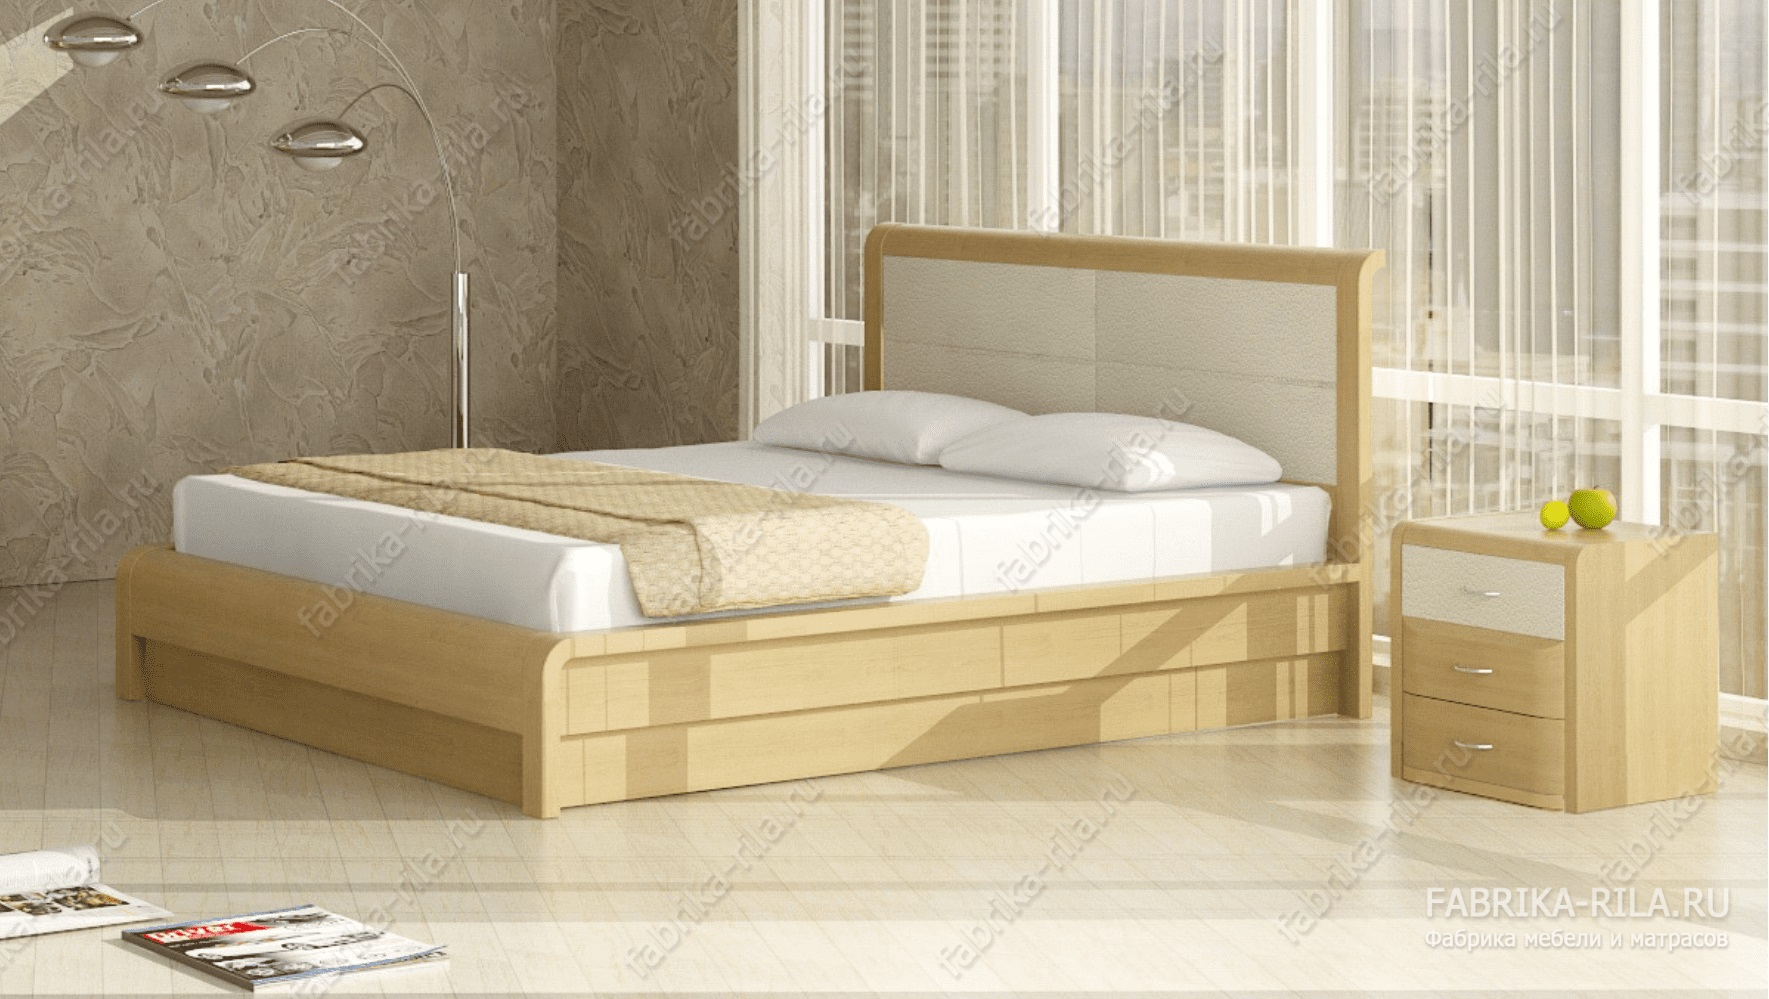 Кровать Arikama 1 — 200x200 см. из сосны